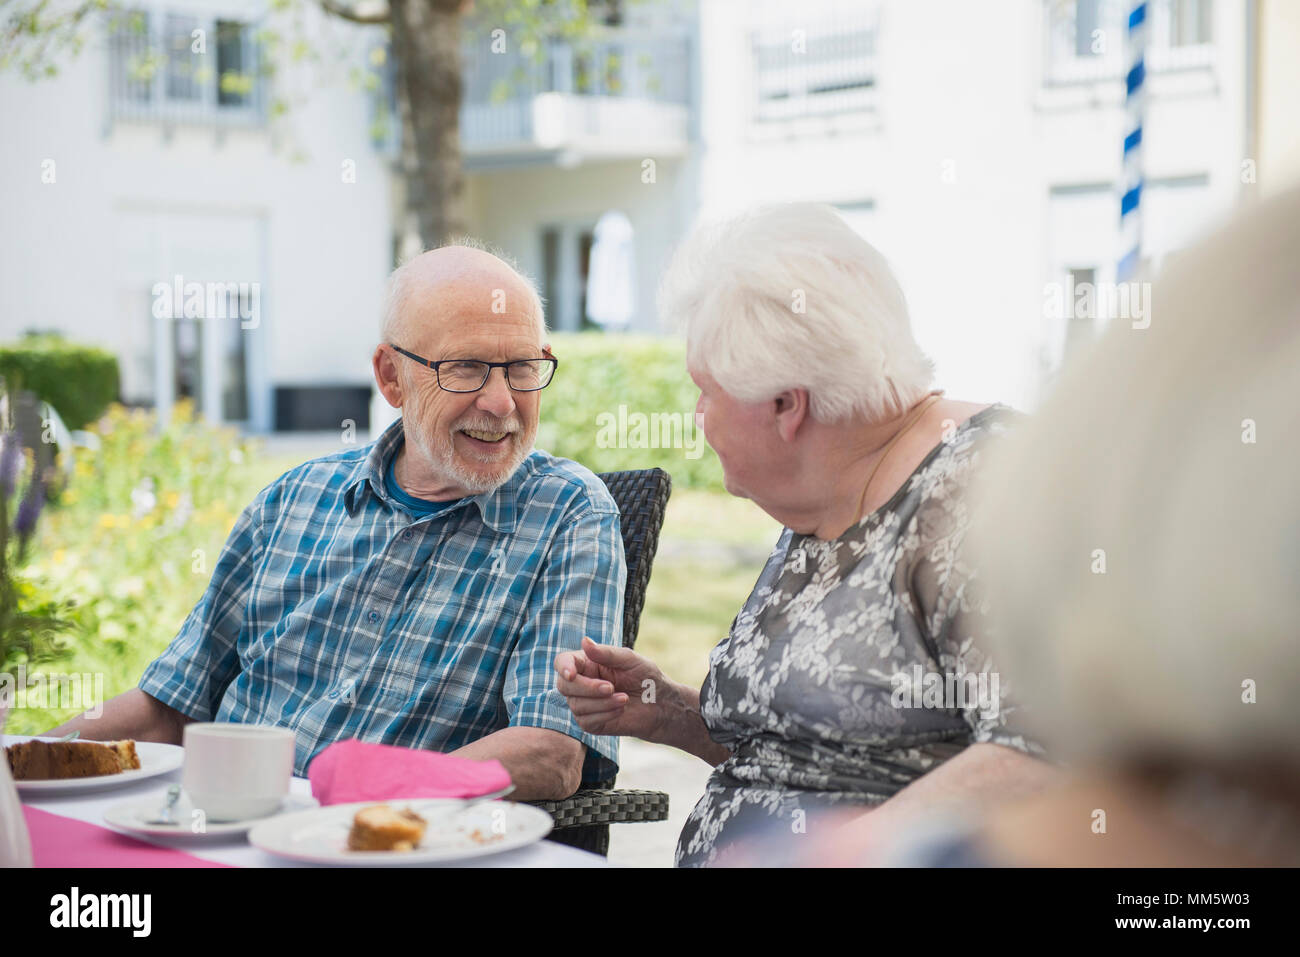 Senior people talking on breakfast table Stock Photo